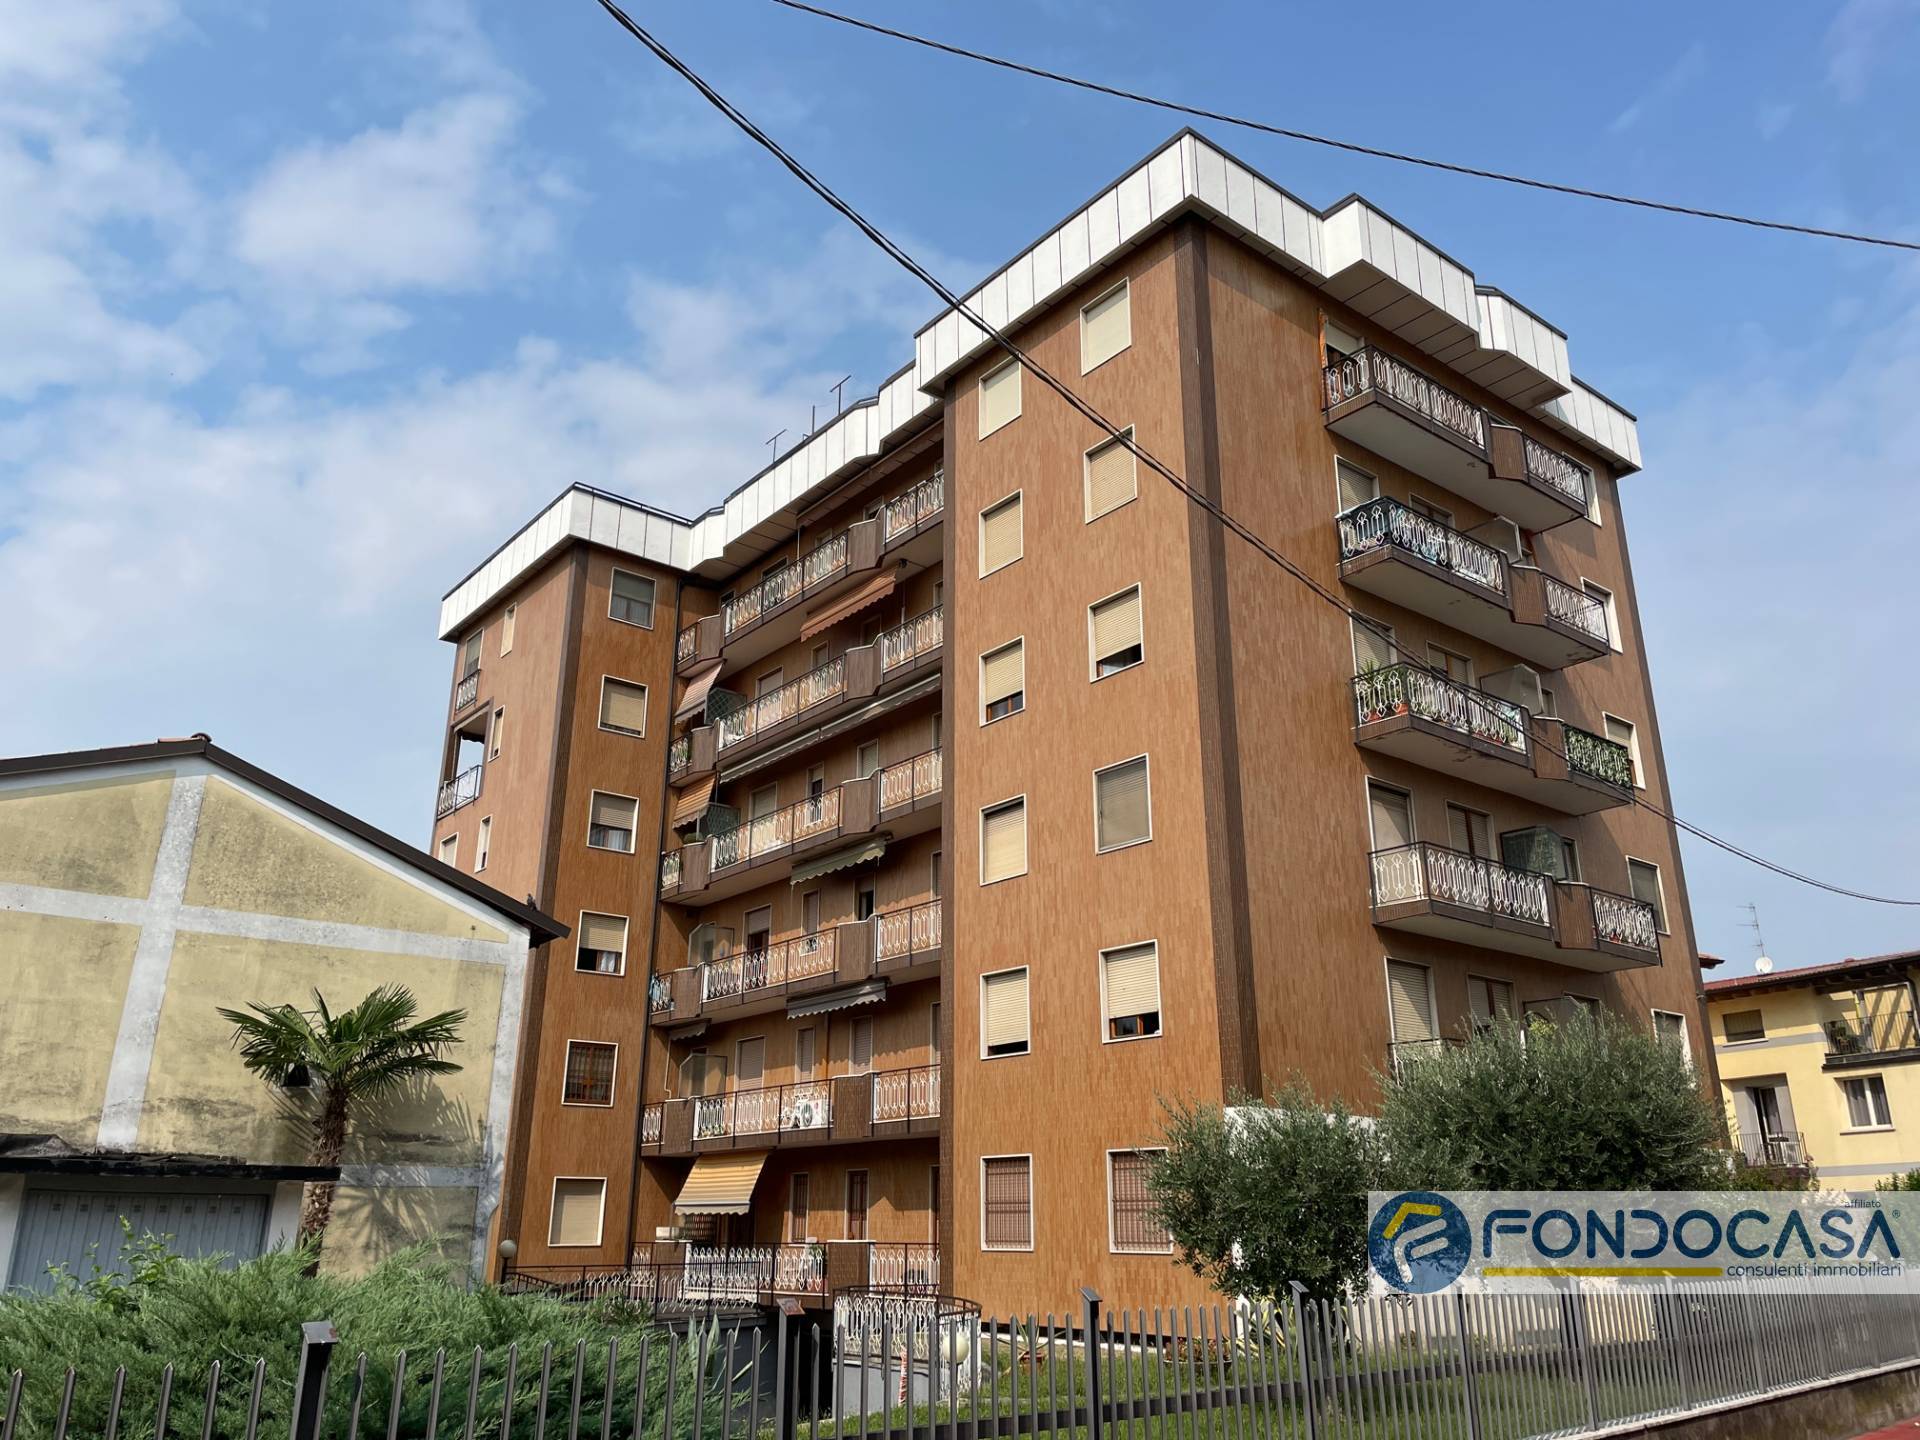 Appartamento in vendita a Rovato, 2 locali, prezzo € 58.000 | PortaleAgenzieImmobiliari.it